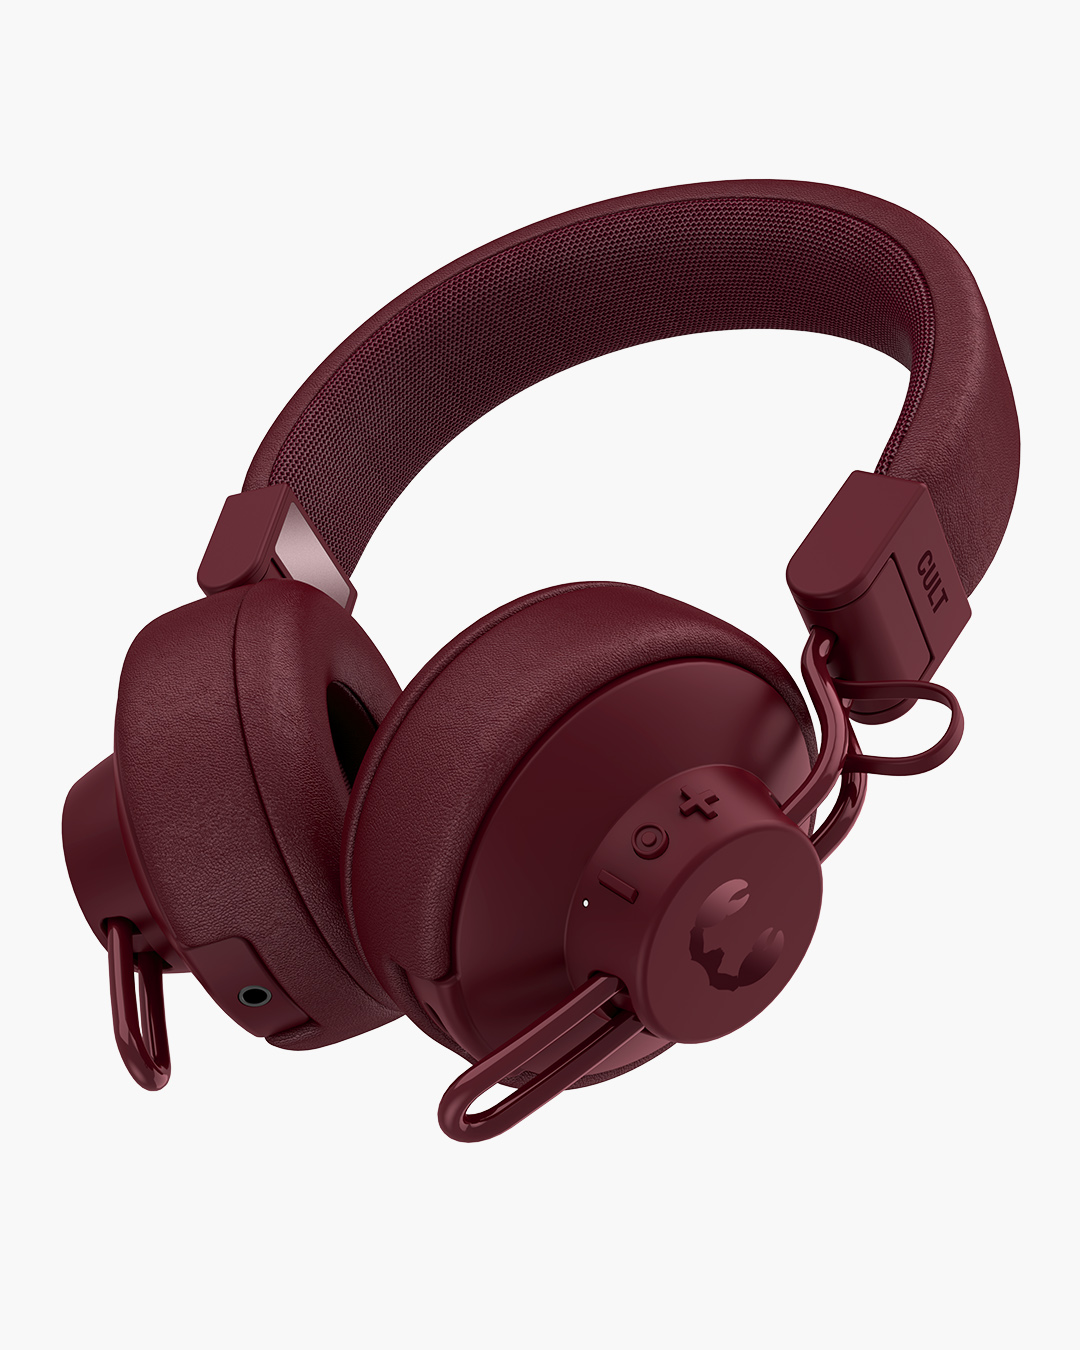 Fresh 'n Rebel - Cult - Wireless on-ear headphones - Ruby Red